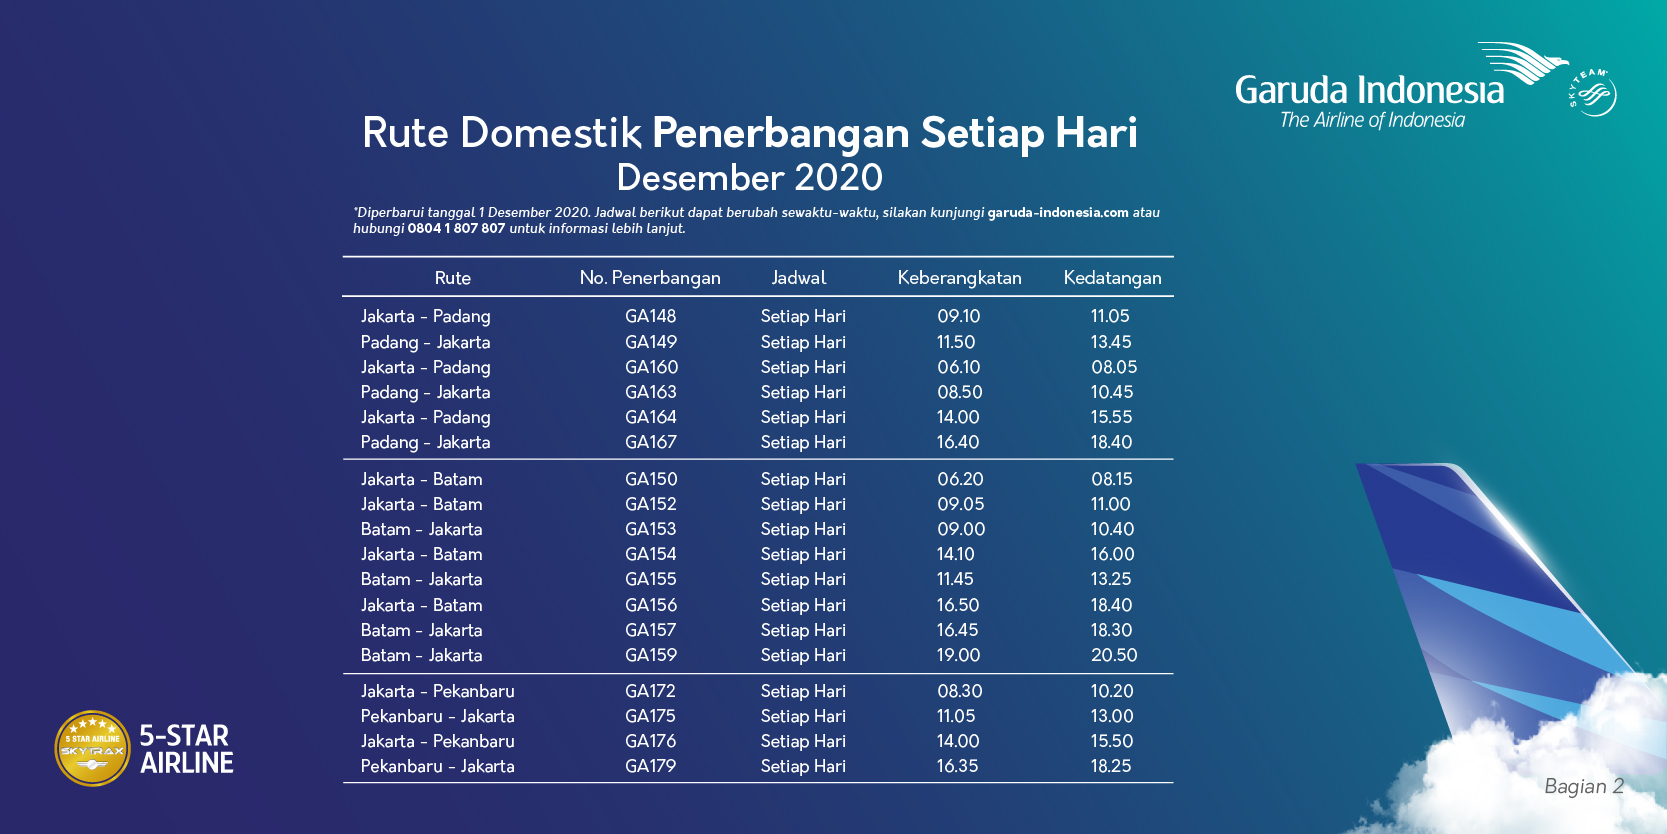 Jadwal penerbangan Garuda Indonesia rute domestik Desember 2020.